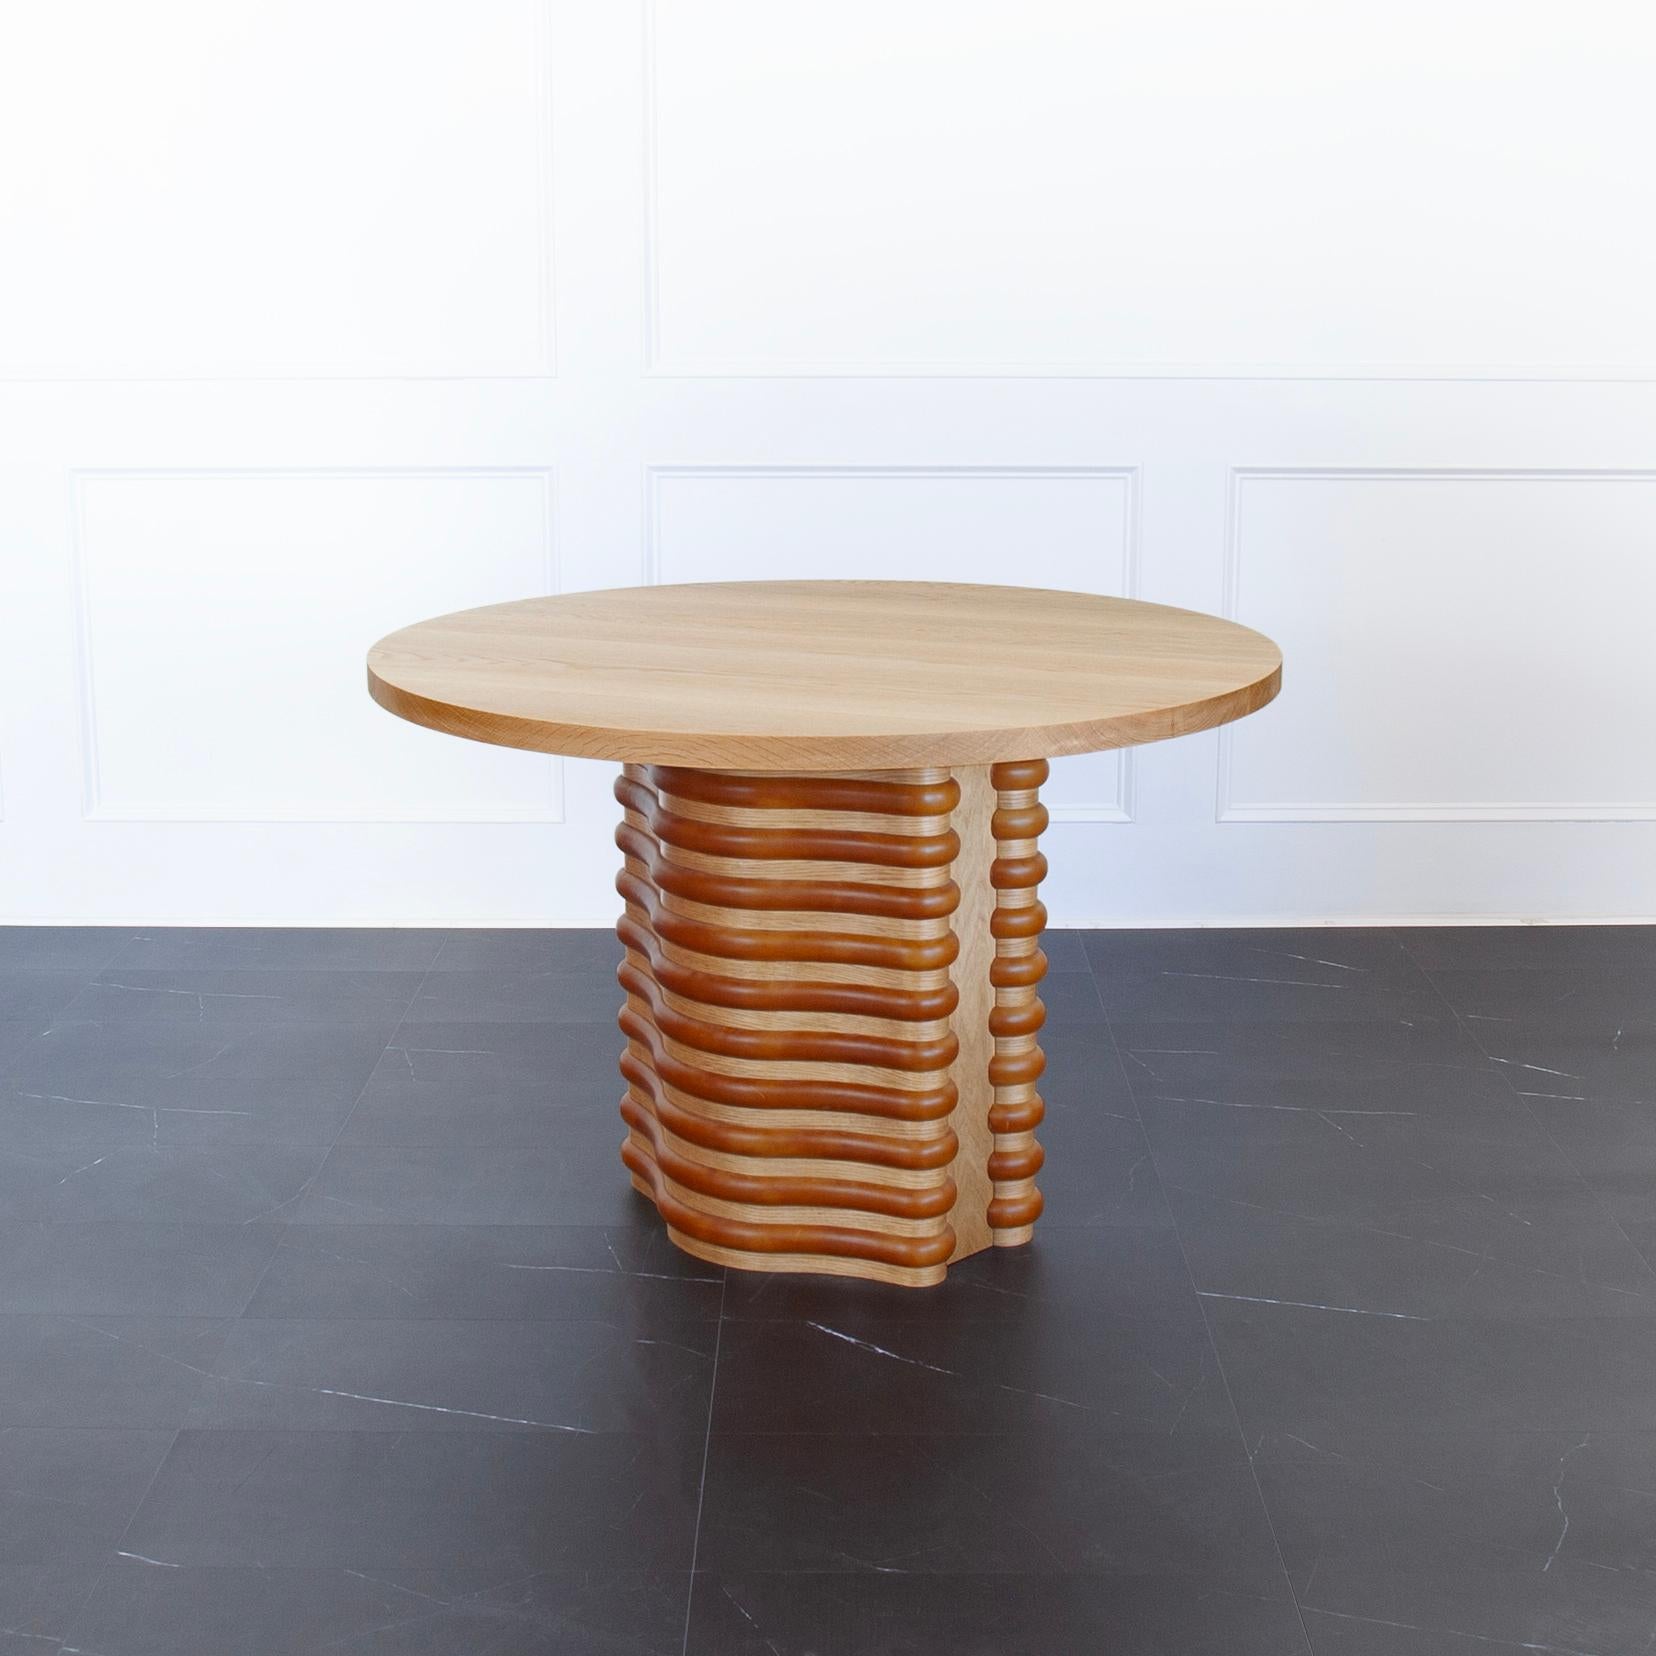 Roslin Sockeltisch von Crump and Kwash 

Tischplatte aus Massivholz mit Acrylversiegelung / Rippen aus Massivholz und mit Leder ummantelt / verstellbare Nivellierfüße 

Größe: 
48 